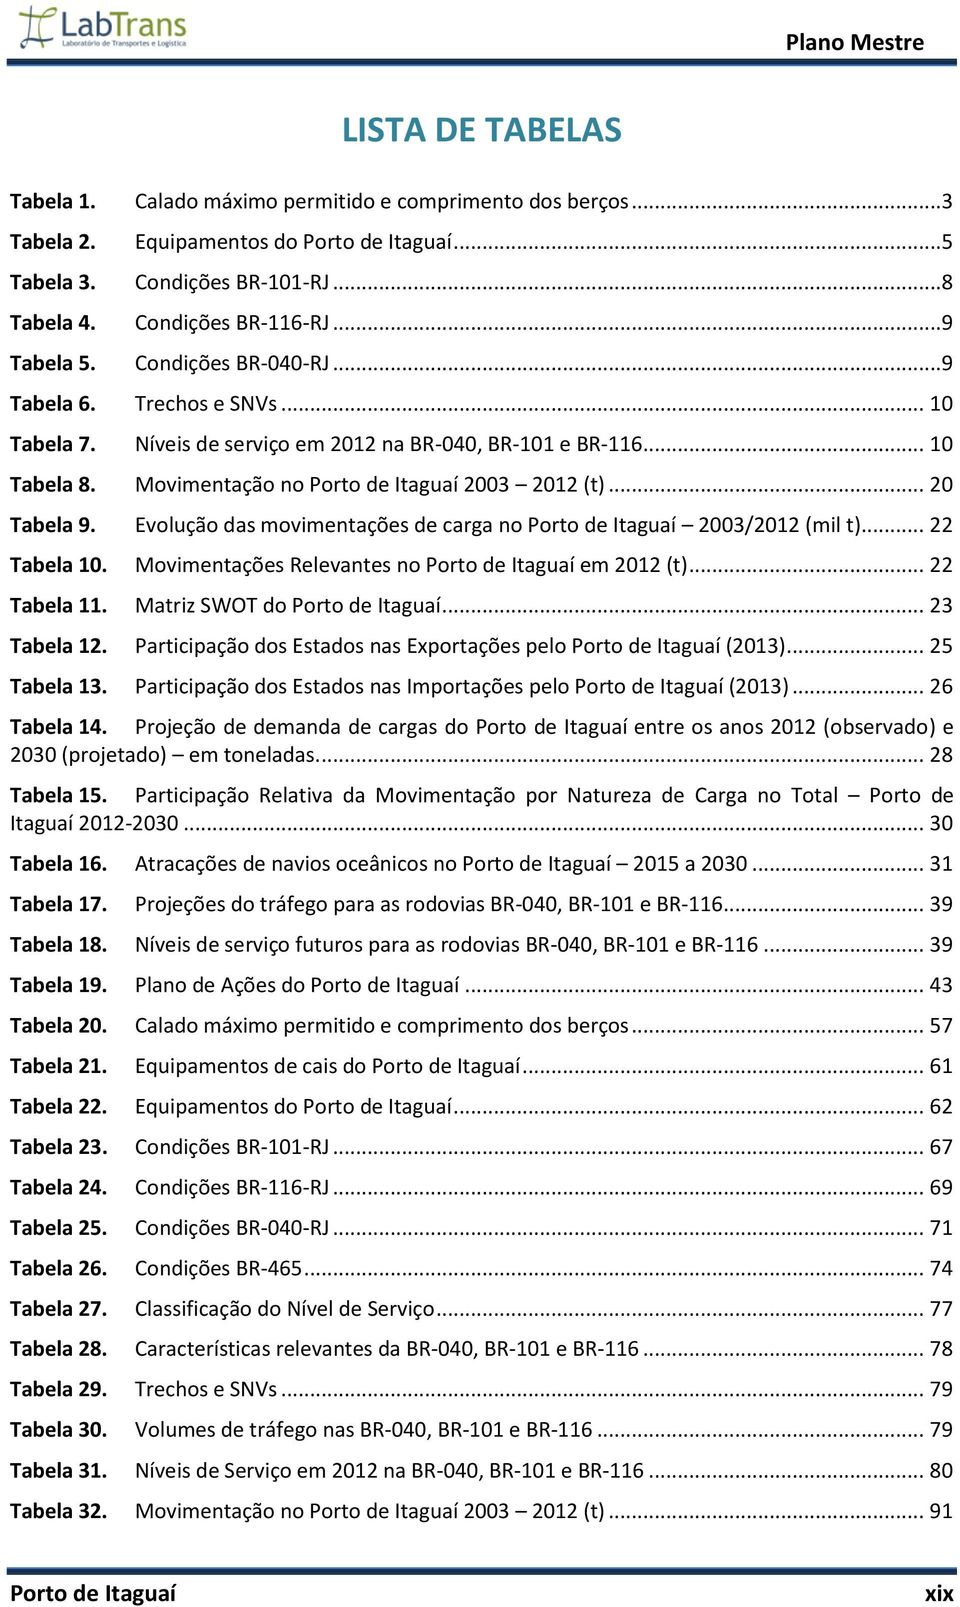 .. 20 Tabela 9. Evolução das movimentações de carga no Porto de Itaguaí 2003/2012 (mil t)... 22 Tabela 10. Movimentações Relevantes no Porto de Itaguaí em 2012 (t)... 22 Tabela 11.